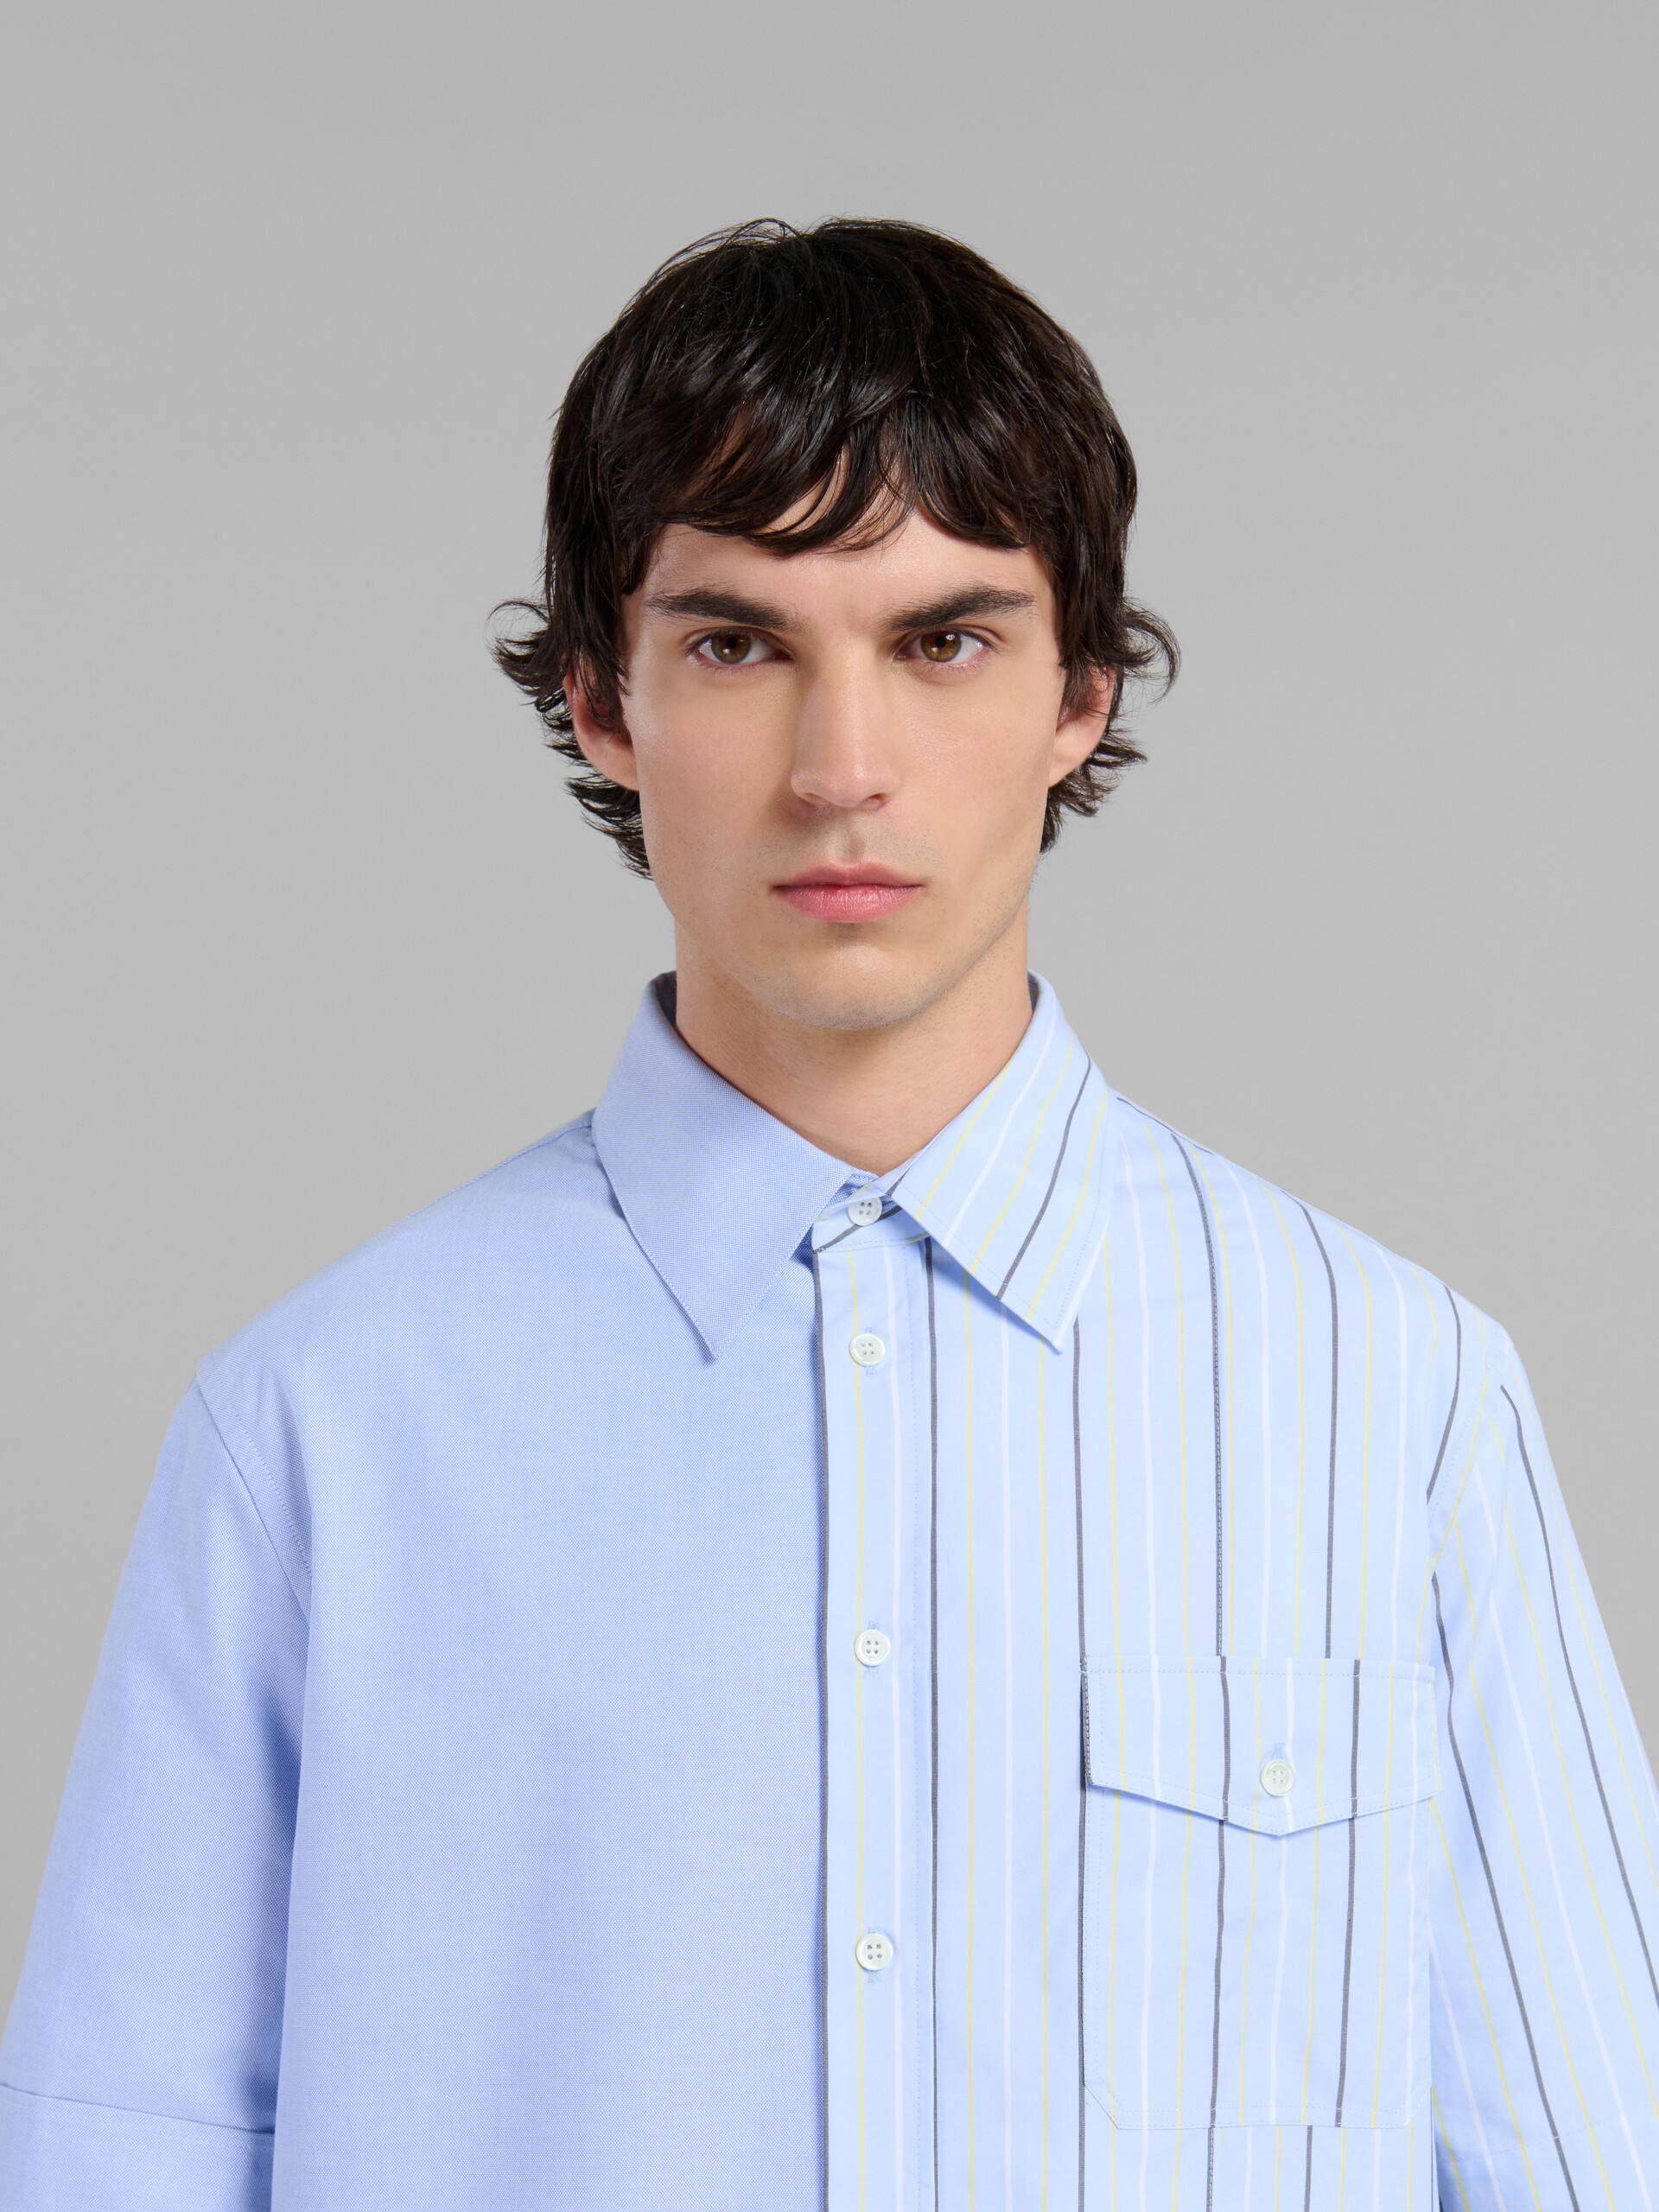 Camisa de popelina ecológica azul claro con diseño dividido por la mitad - Camisas - Image 4